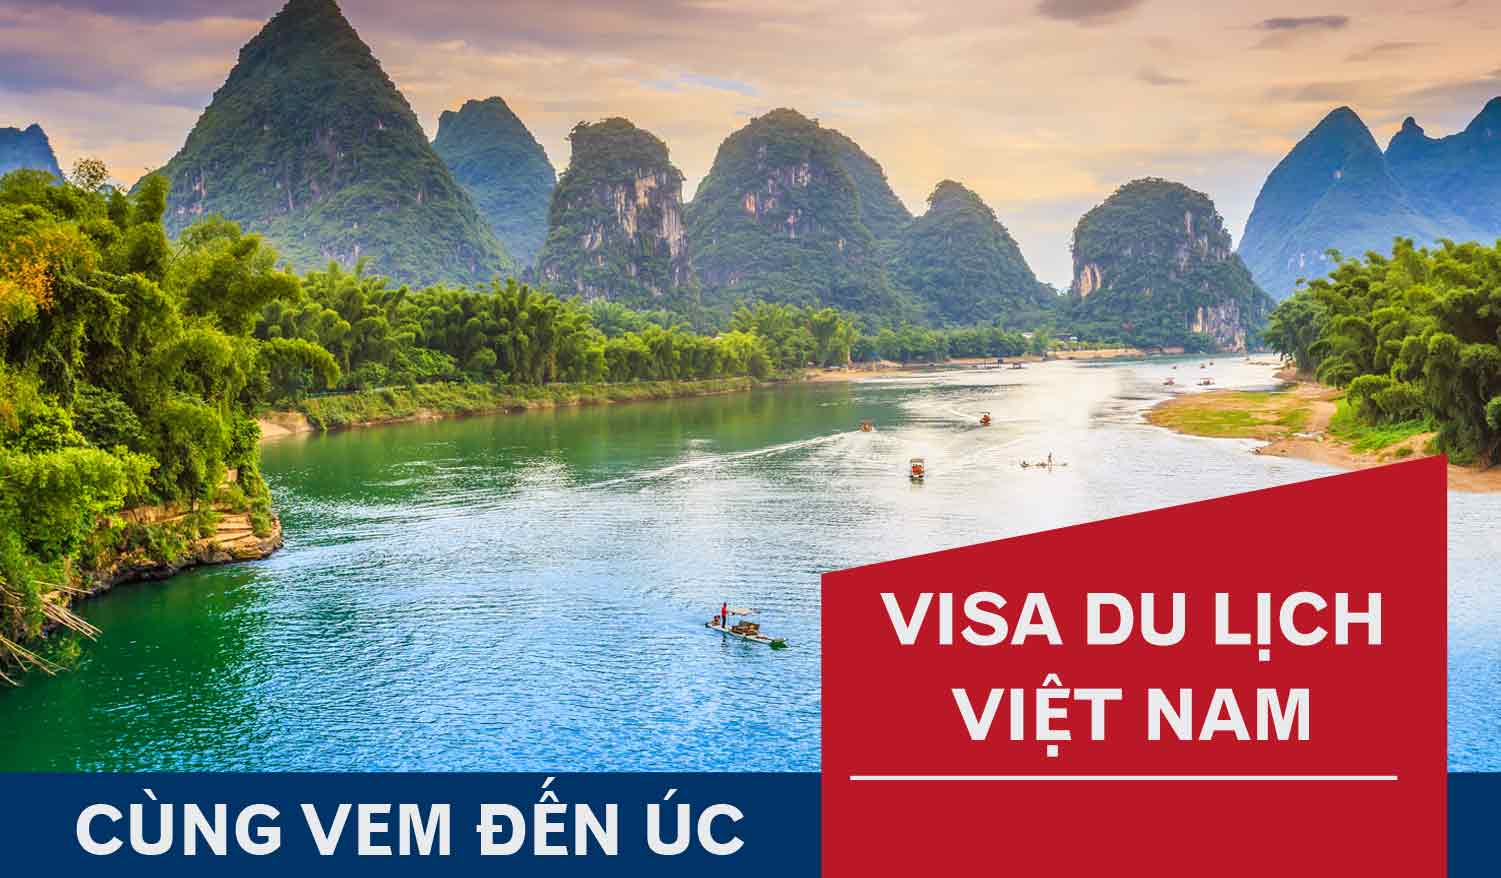 Cách làm visa du lịch Việt Nam chuẩn xác, nhanh chóng nhất!